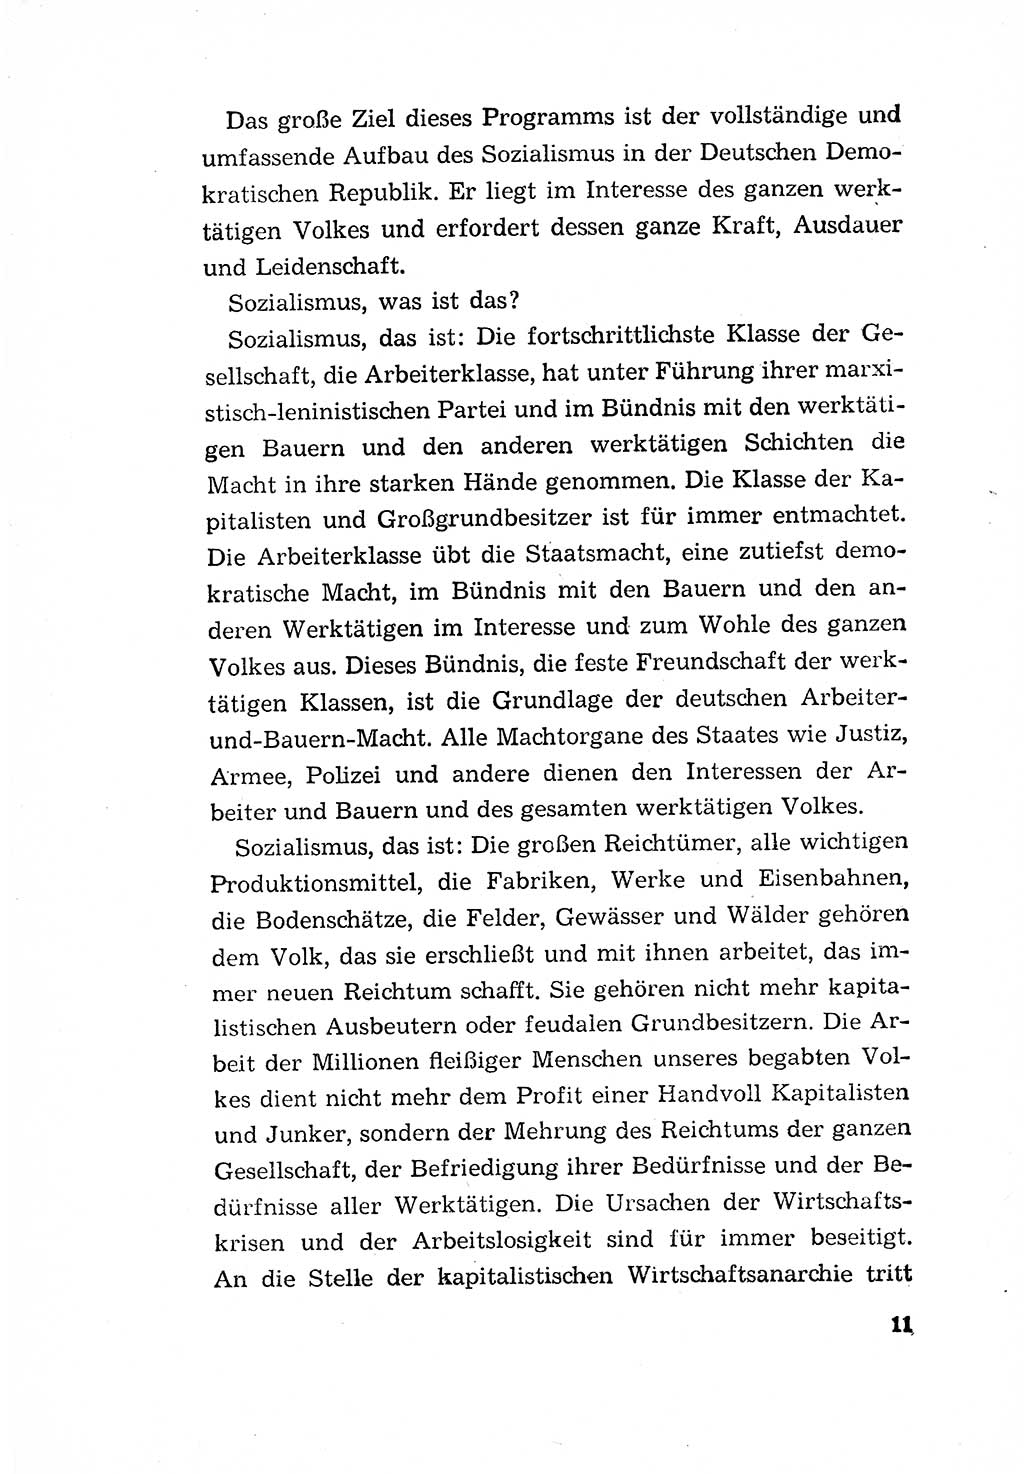 Programm der Sozialistischen Einheitspartei Deutschlands (SED) [Deutsche Demokratische Republik (DDR)] 1963, Seite 11 (Progr. SED DDR 1963, S. 11)